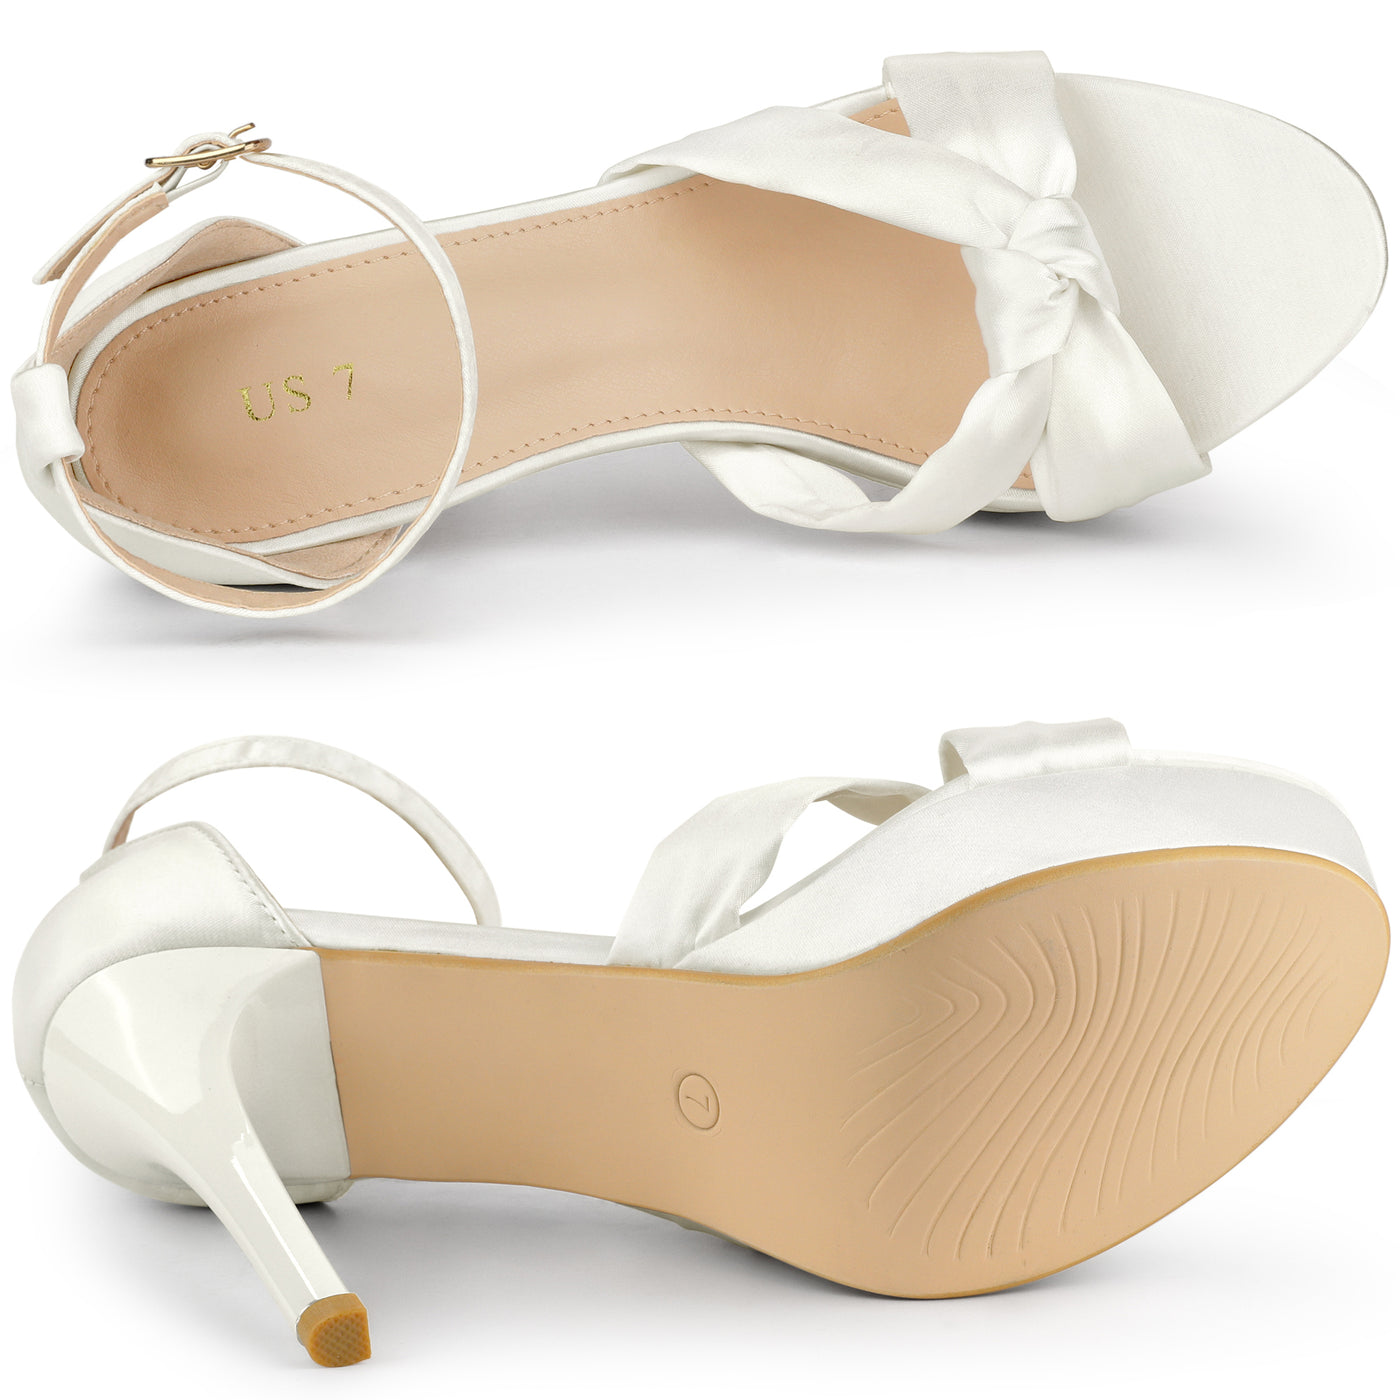 Allegra K Women's Satin Twist Knot Platform Contrast Stiletto Heel Sandals